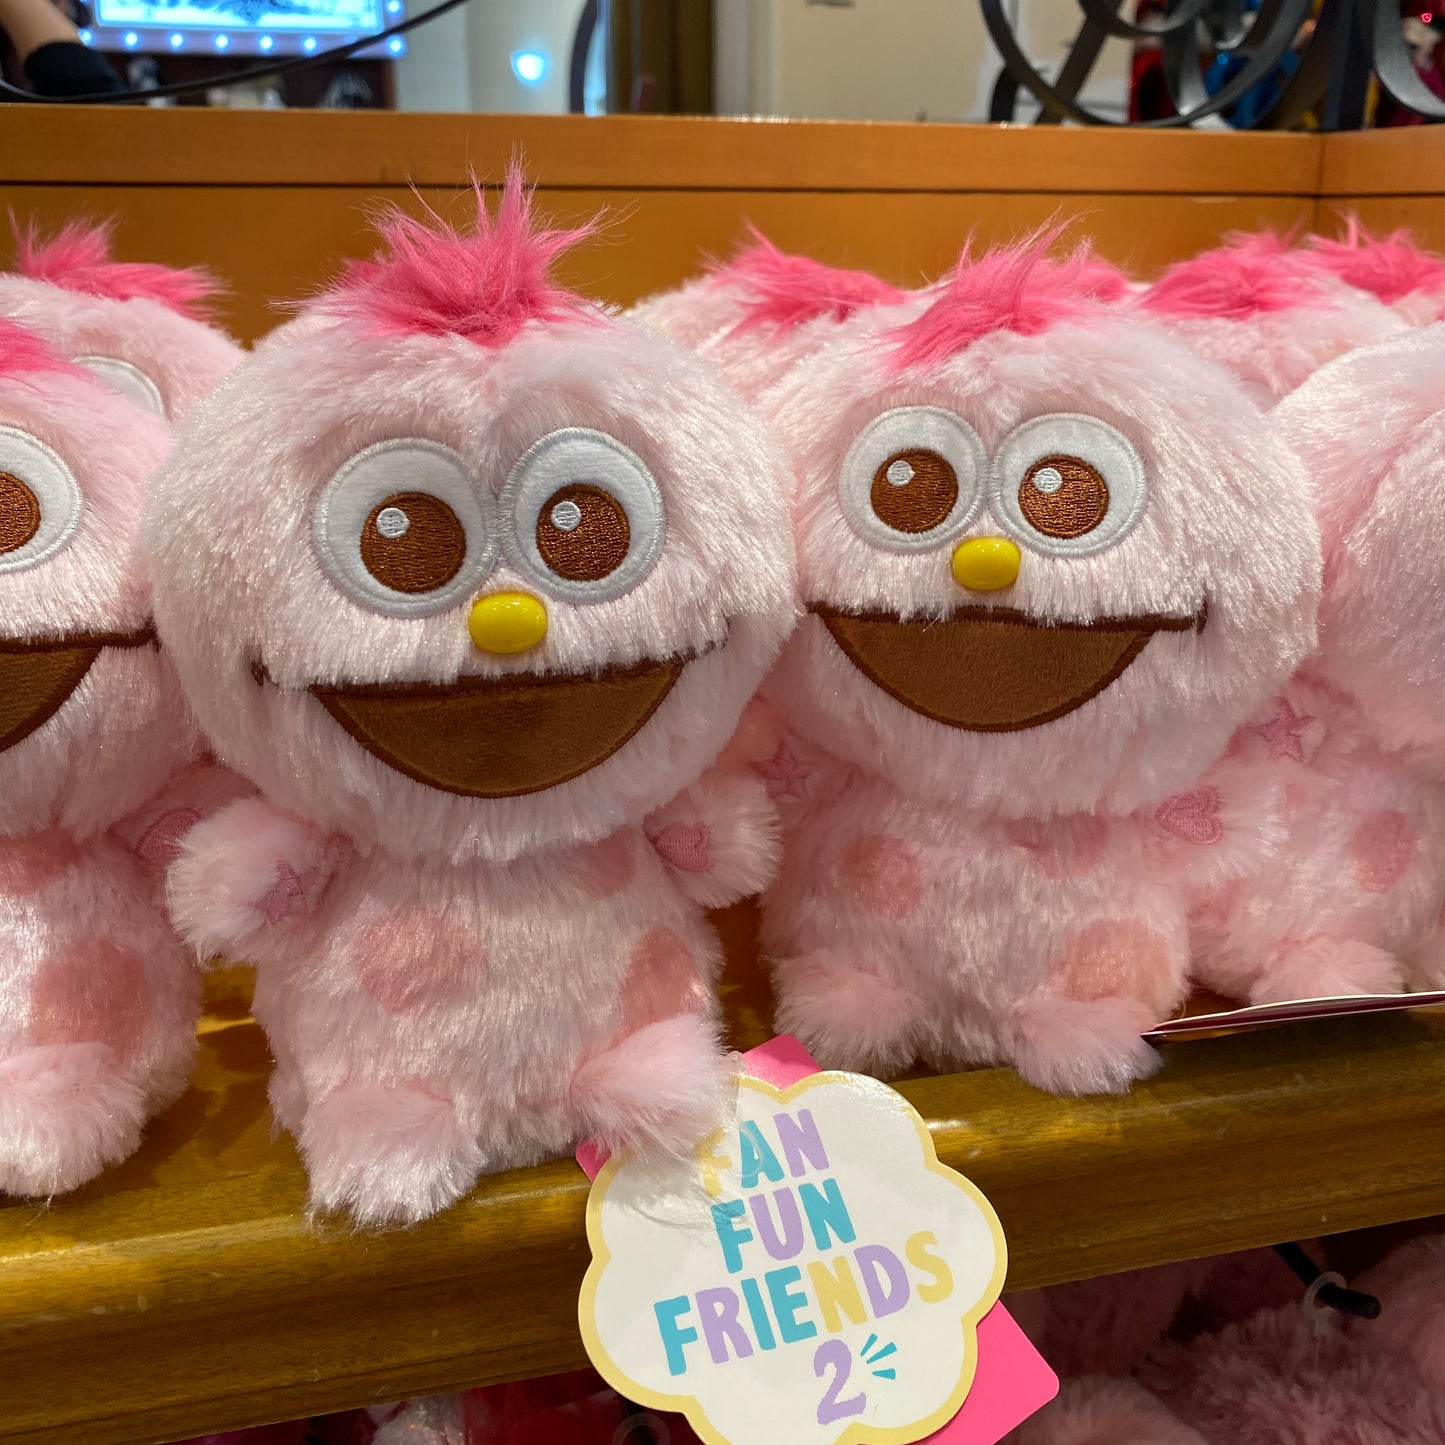 【Order】USJ Fan Fun Friends 2 Series - Moppy Plush Doll